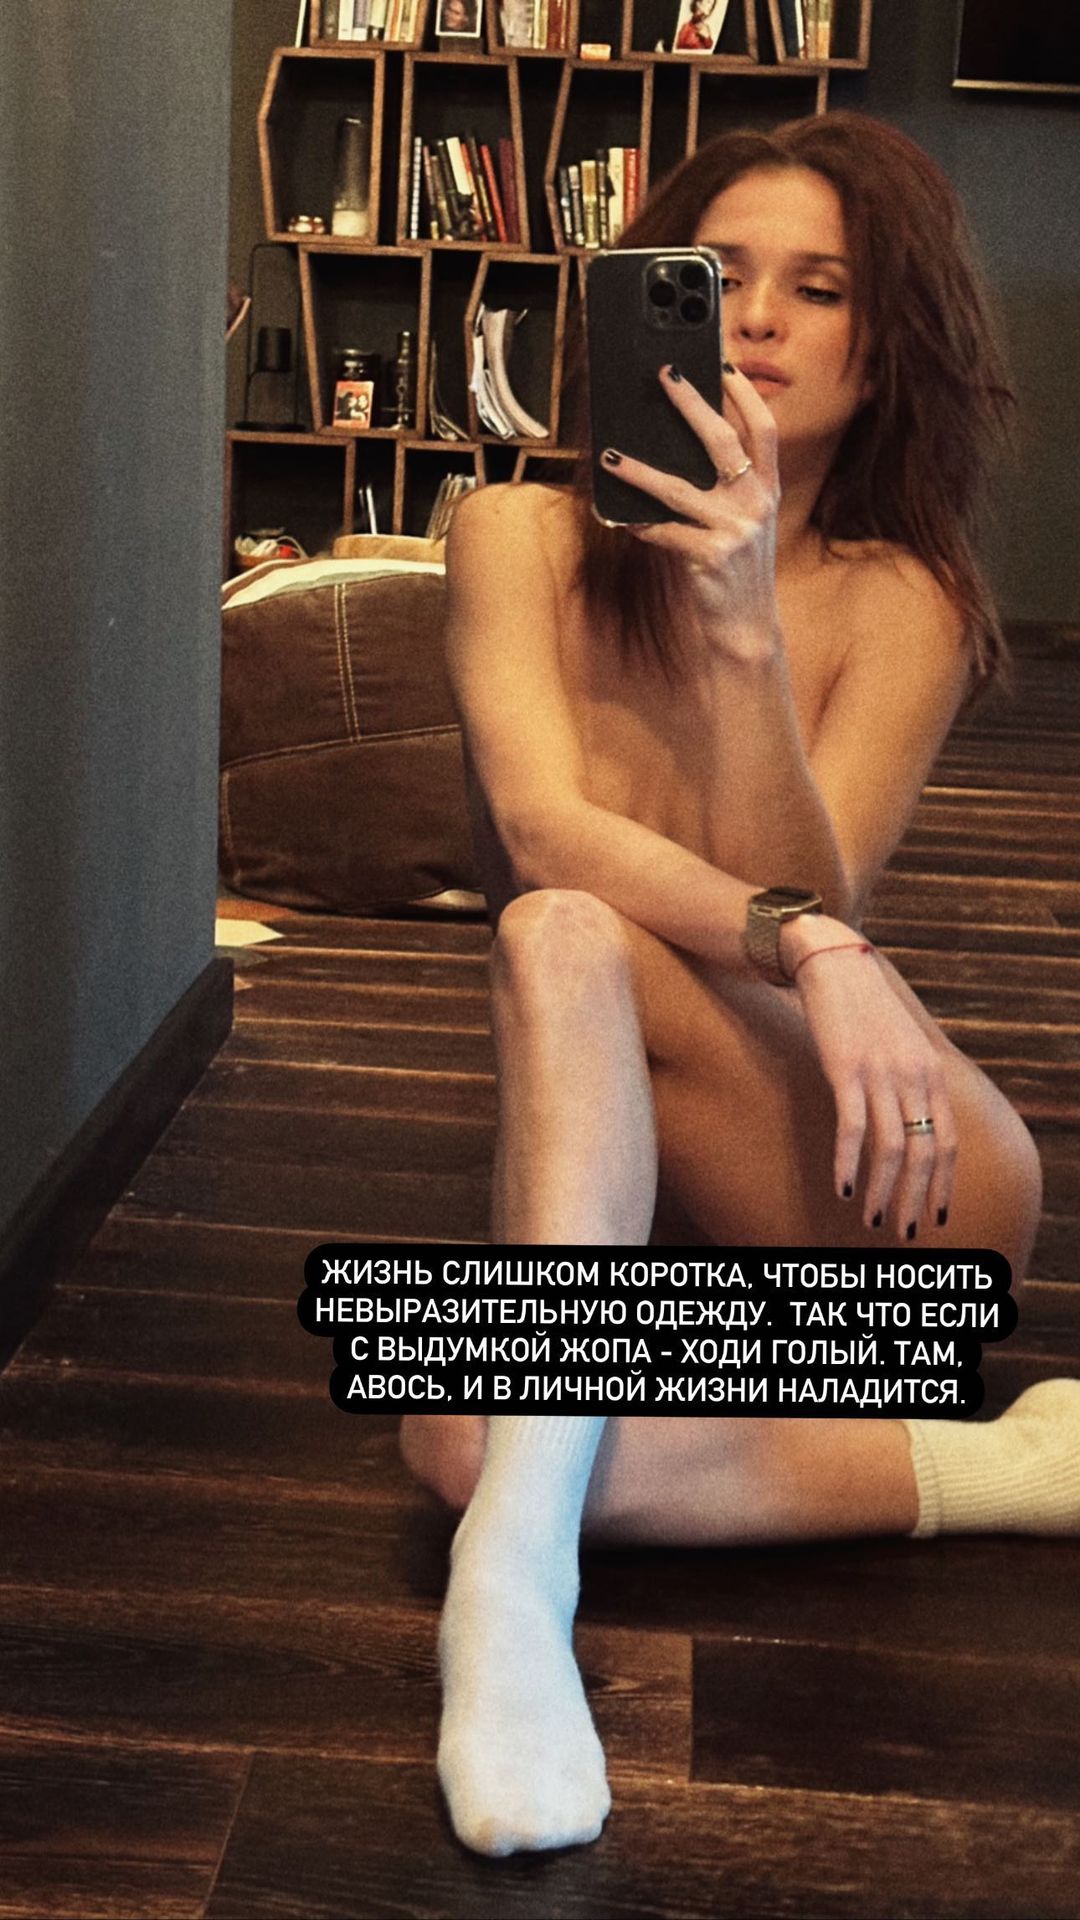 Актриса Лукерья Ильяшенко поделилась откровенным снимком - Первый женский —  новости шоу-бизнеса, культура, Life Style